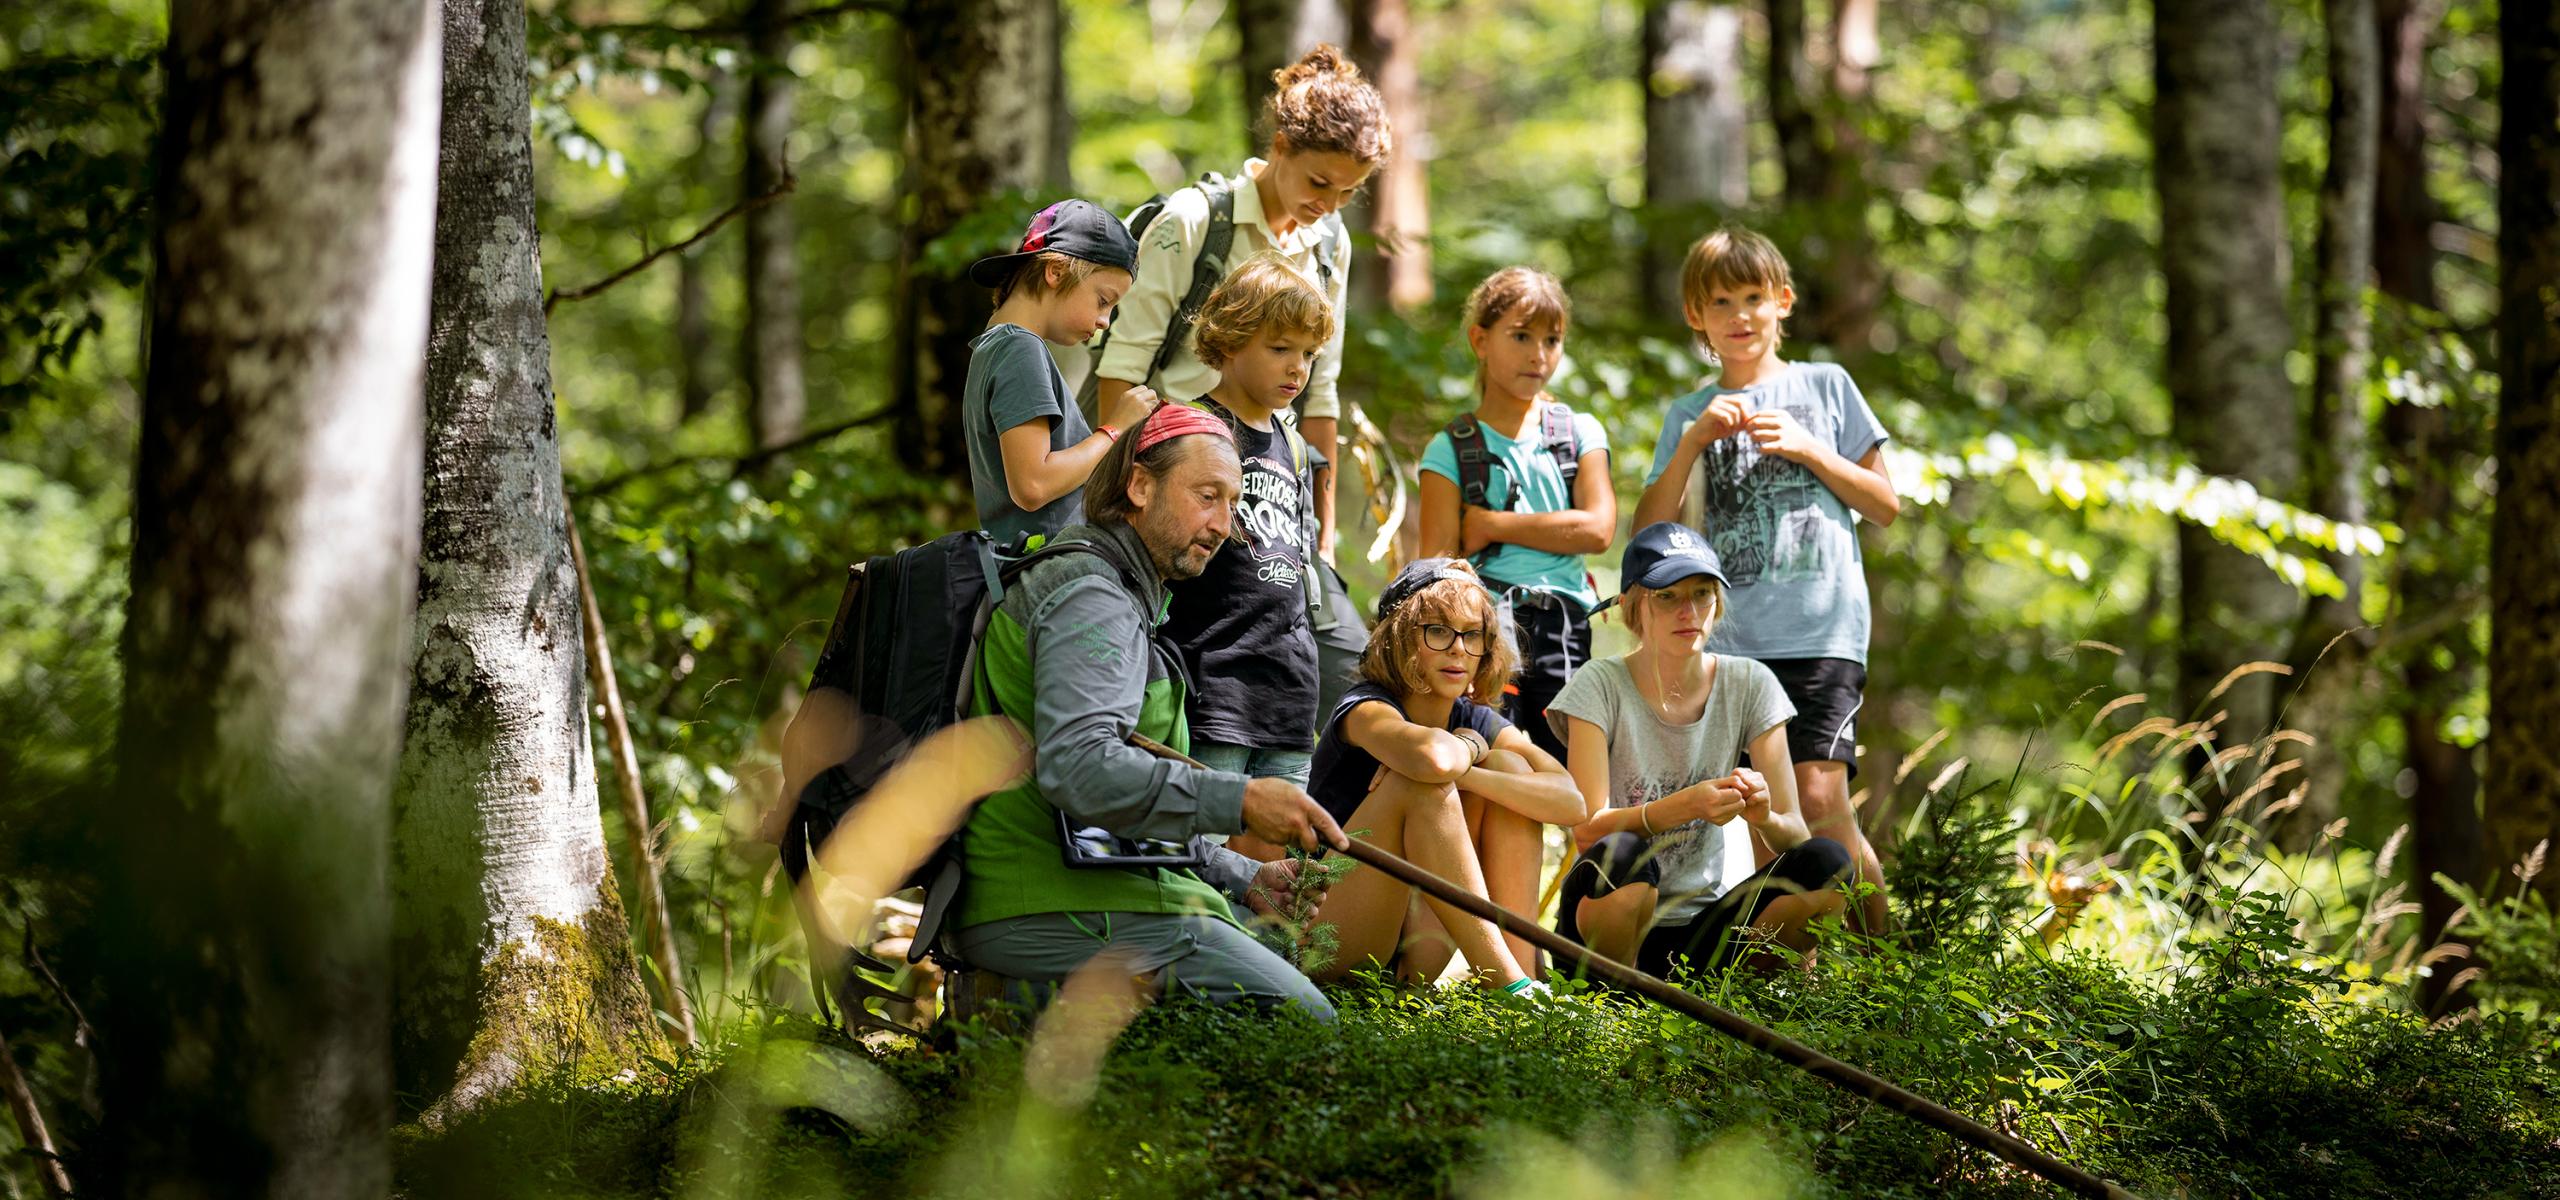 Strážce národního parku se skupinou školáků v lese